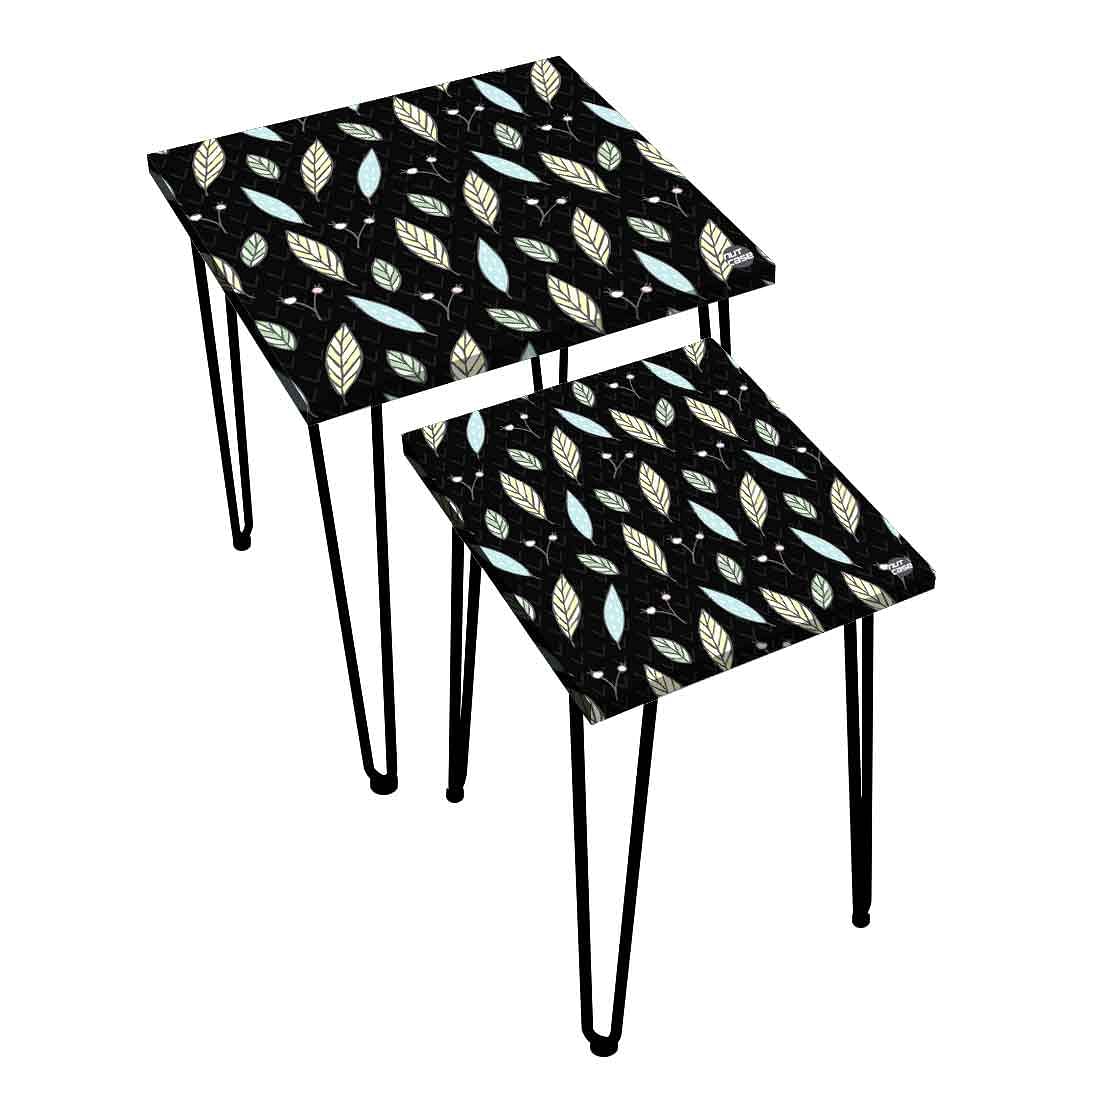 Designer Nest of Two Tables for Side Table Living Room & Home Decor - Leaf Nutcase